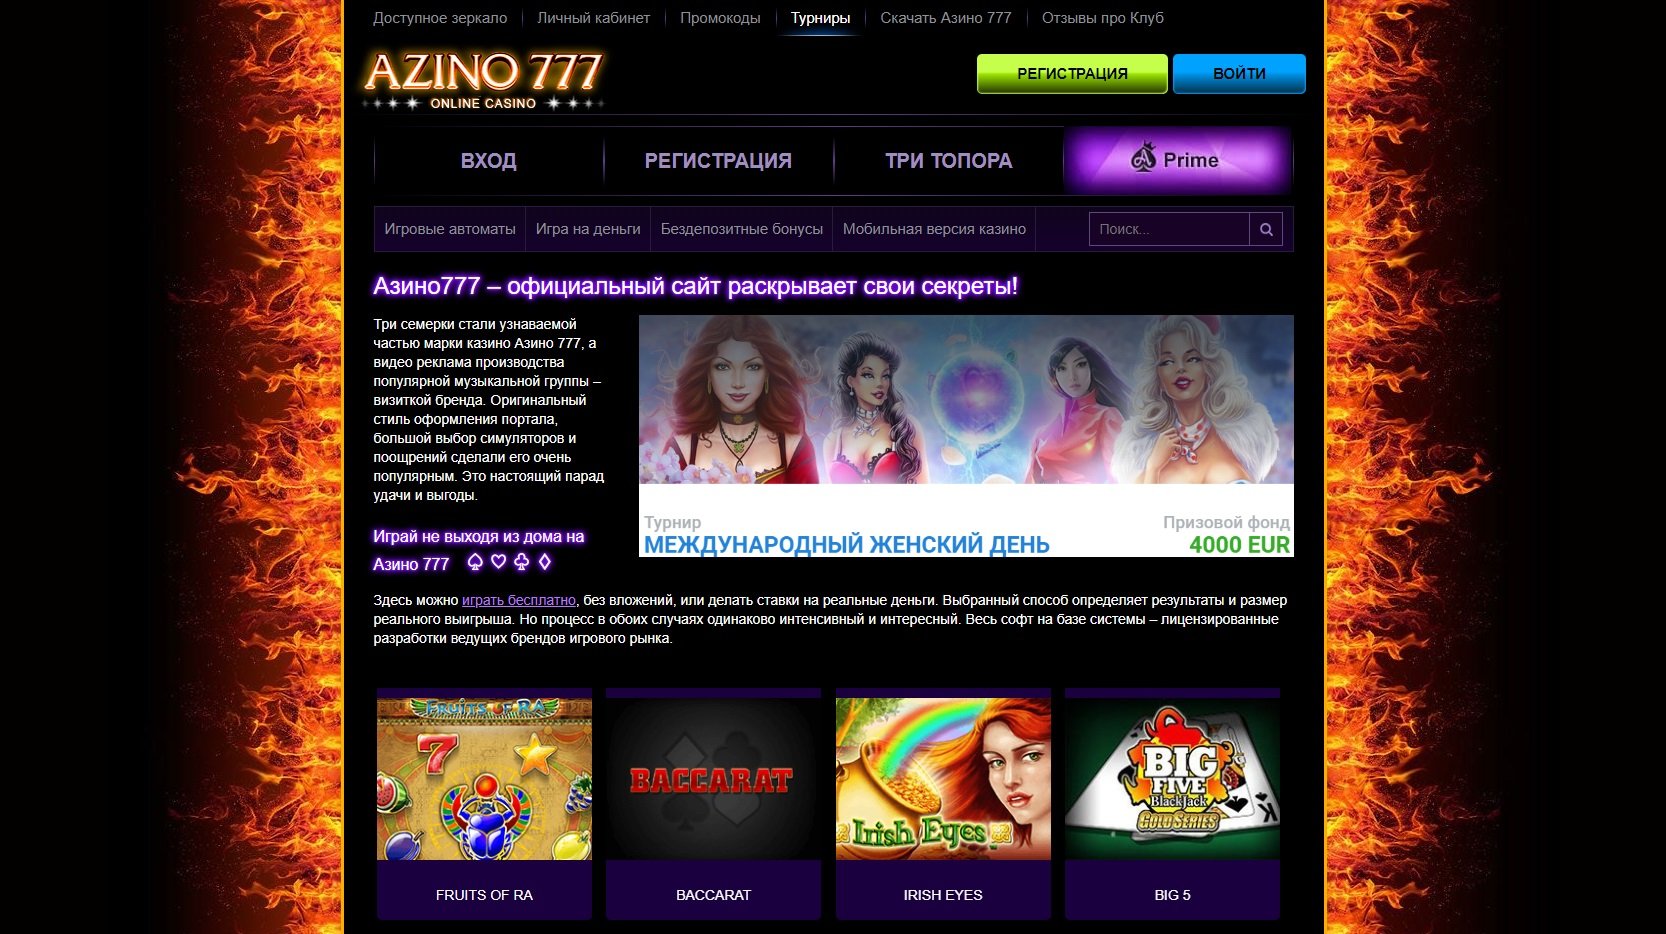 Азино777 официальный сайт скачать на айфон 1wincasino officialsite 1win casino официальный сайт играть